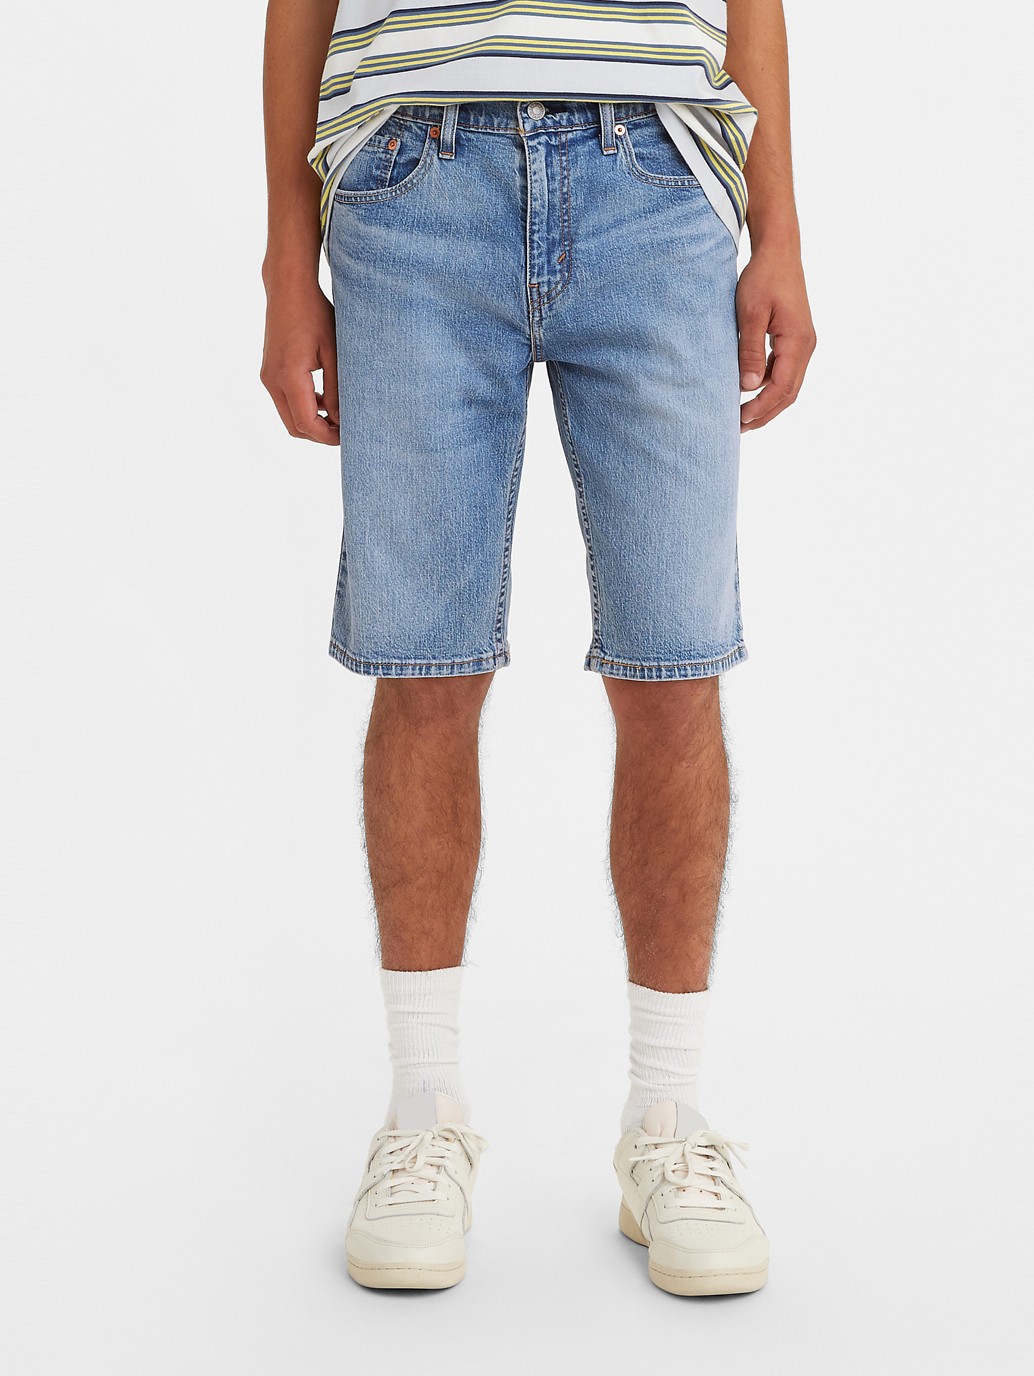 Actualizar 97+ imagen levi’s jean shorts men